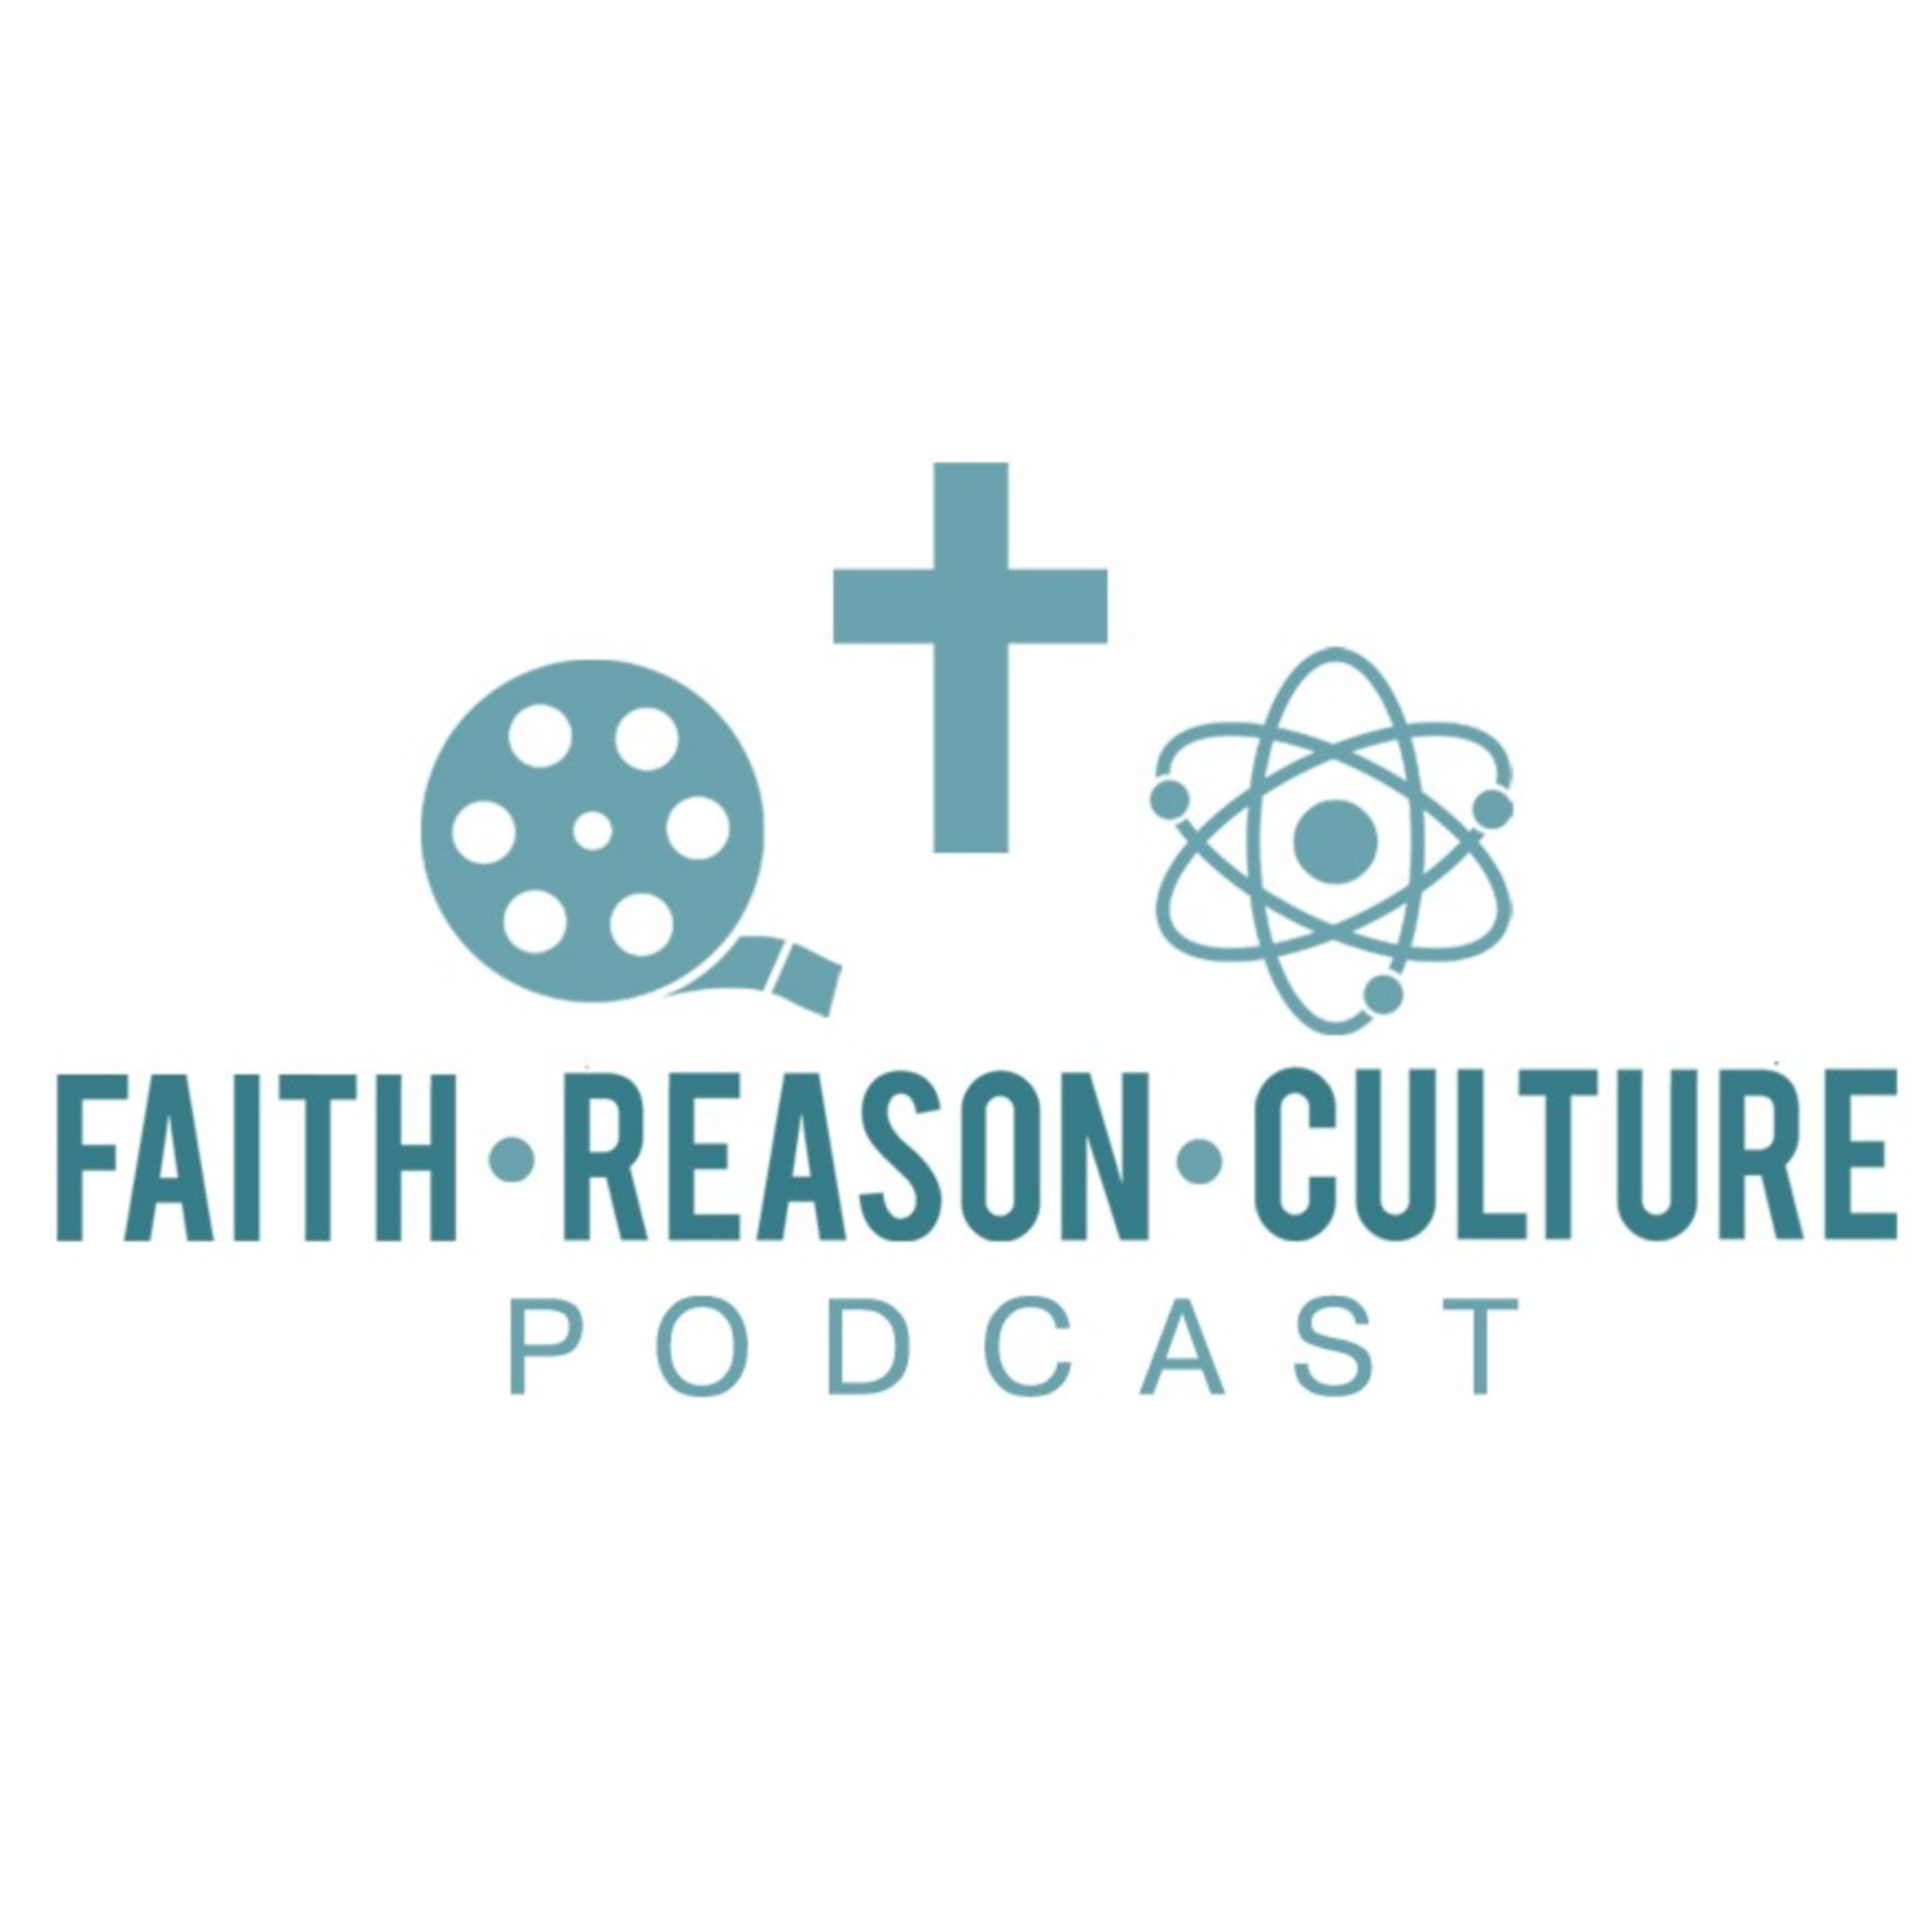 Faith - Reason - Culture Podcast